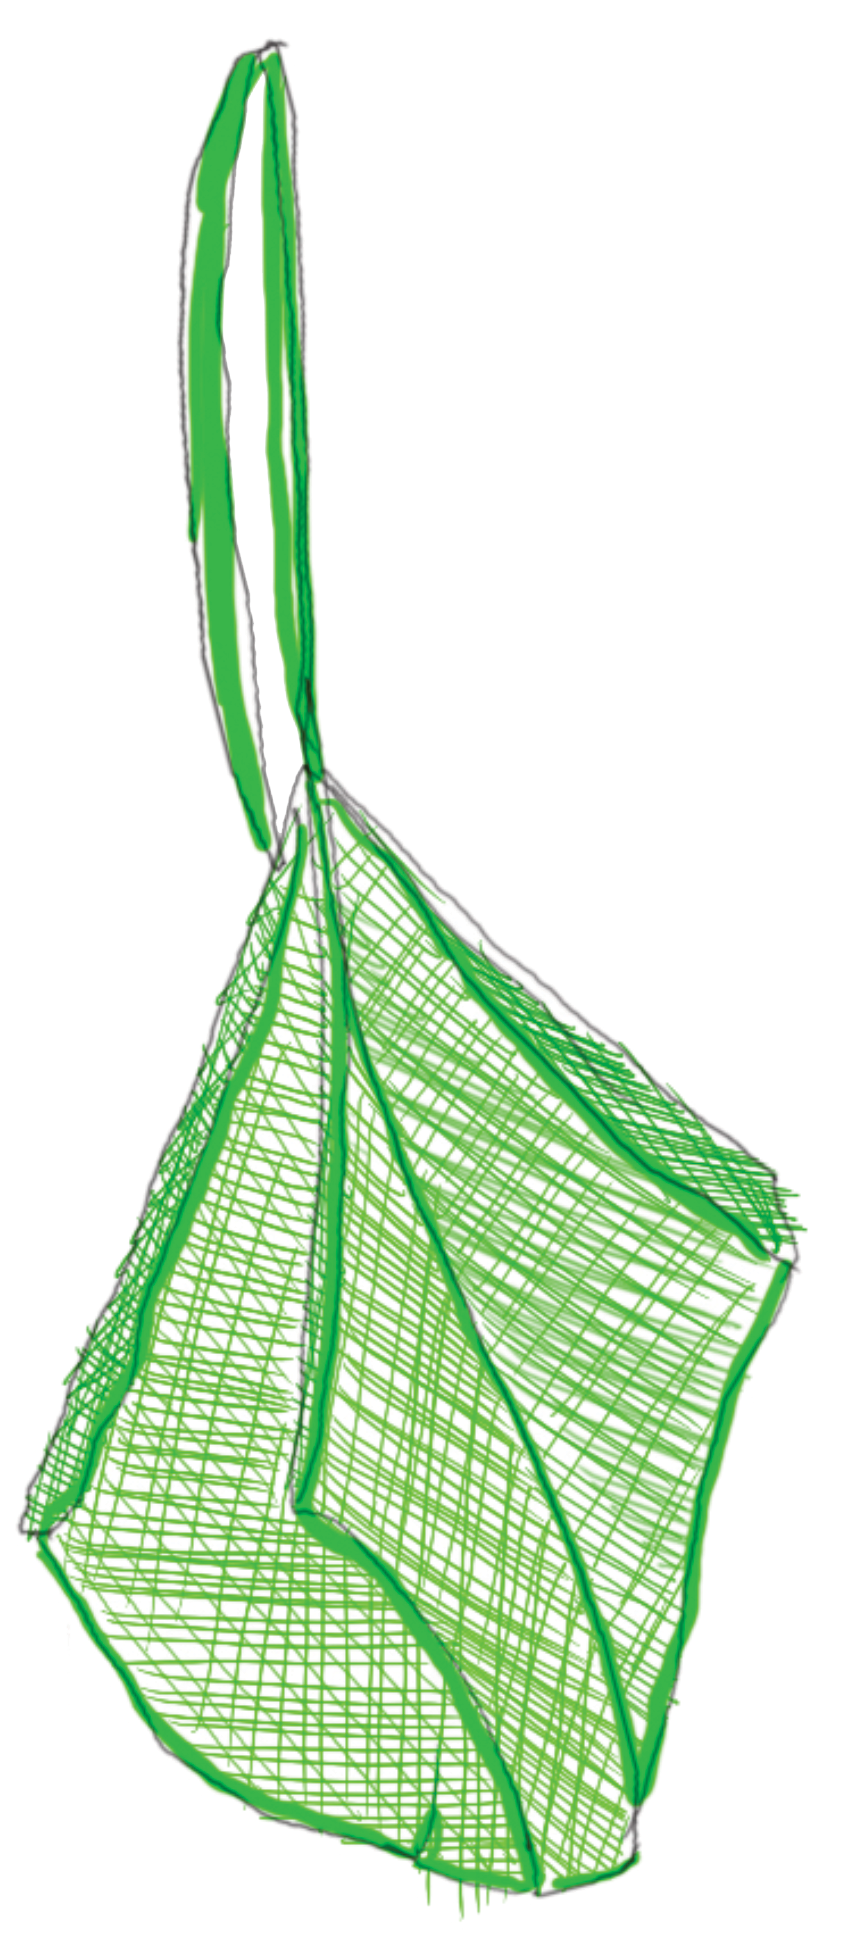 Green net bag